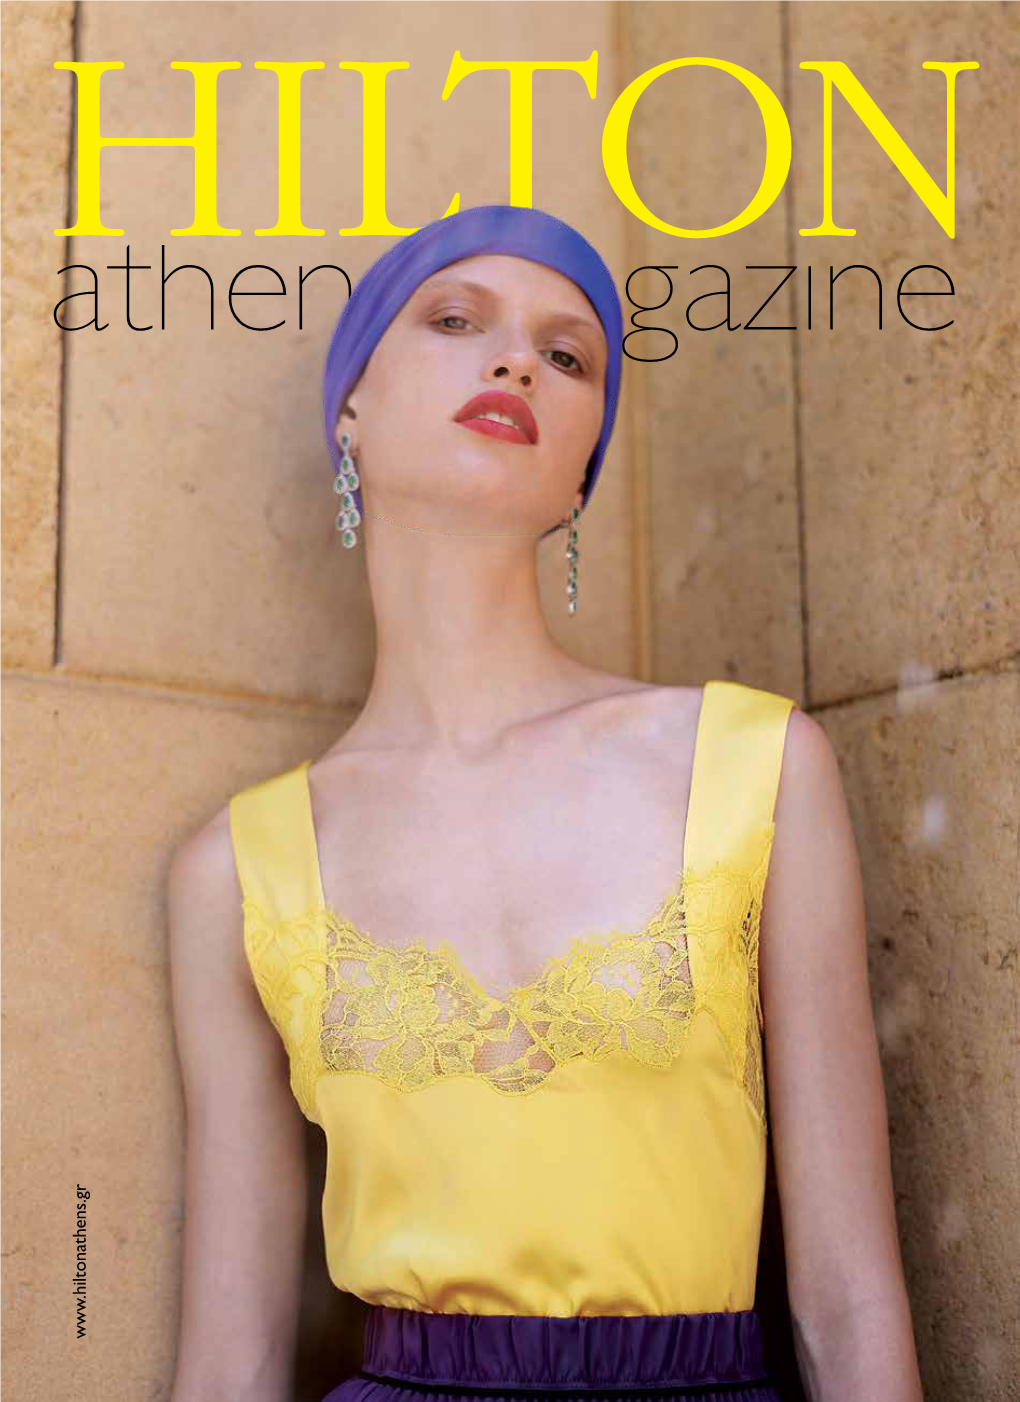 Hilton Athens Magazine-Single 35.Pdf